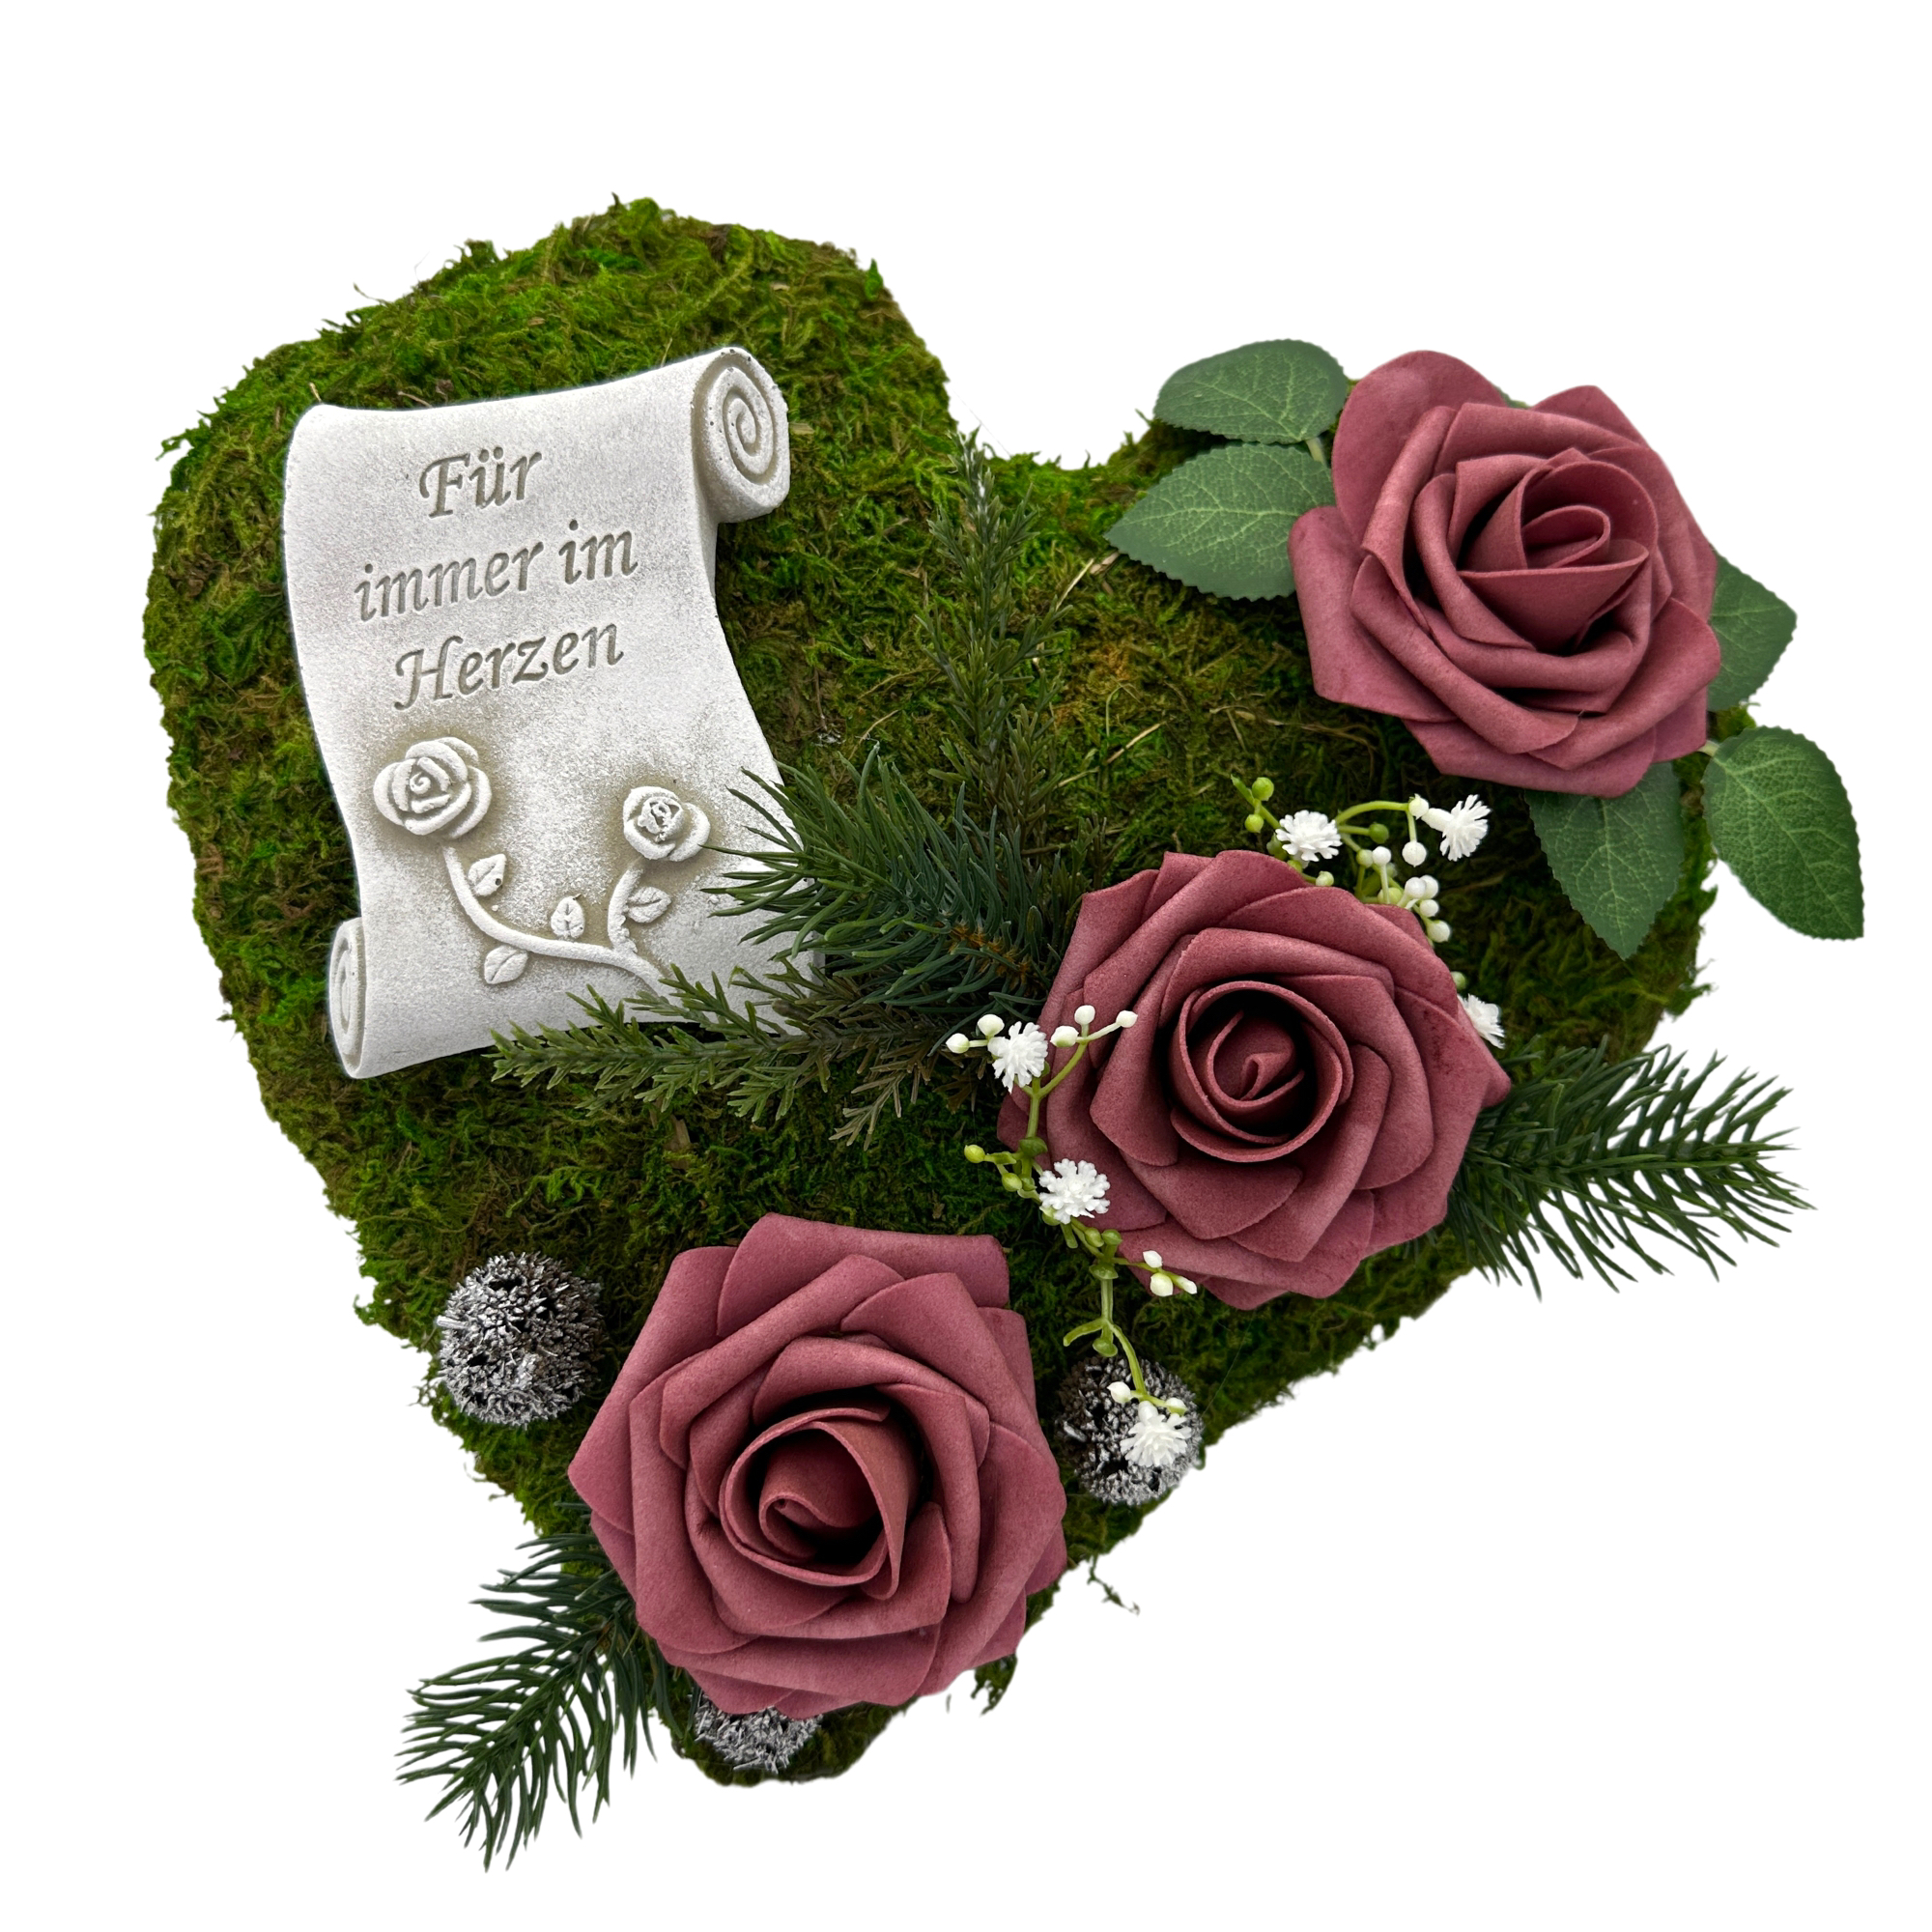 Grabgesteck "Für immer im Herzen" 30cm 3 Rosen bordeaux